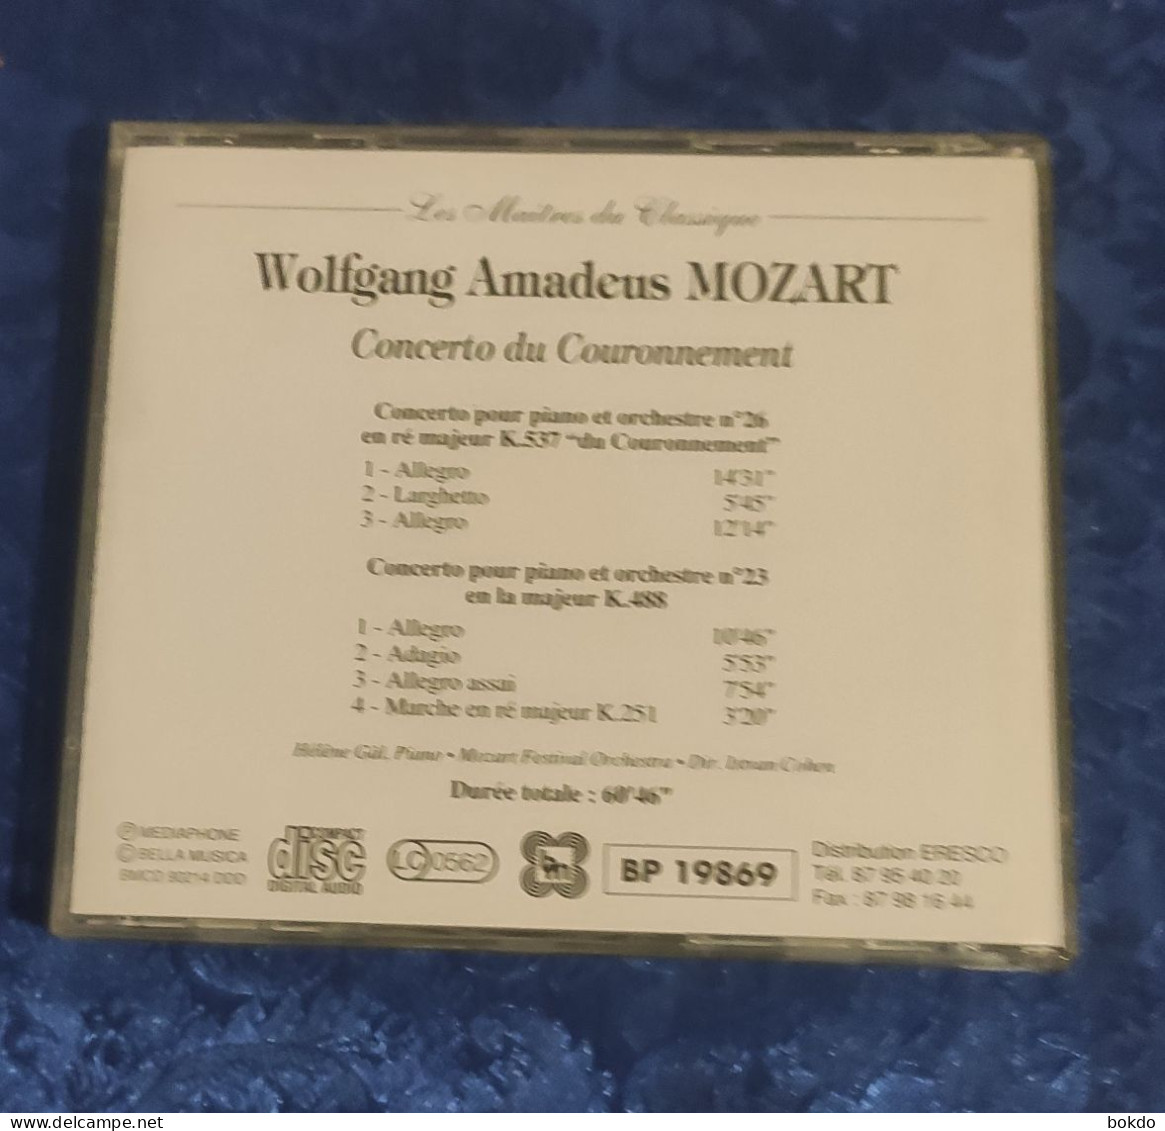 Mozart - Concerto Du Couronnement - Klassiekers